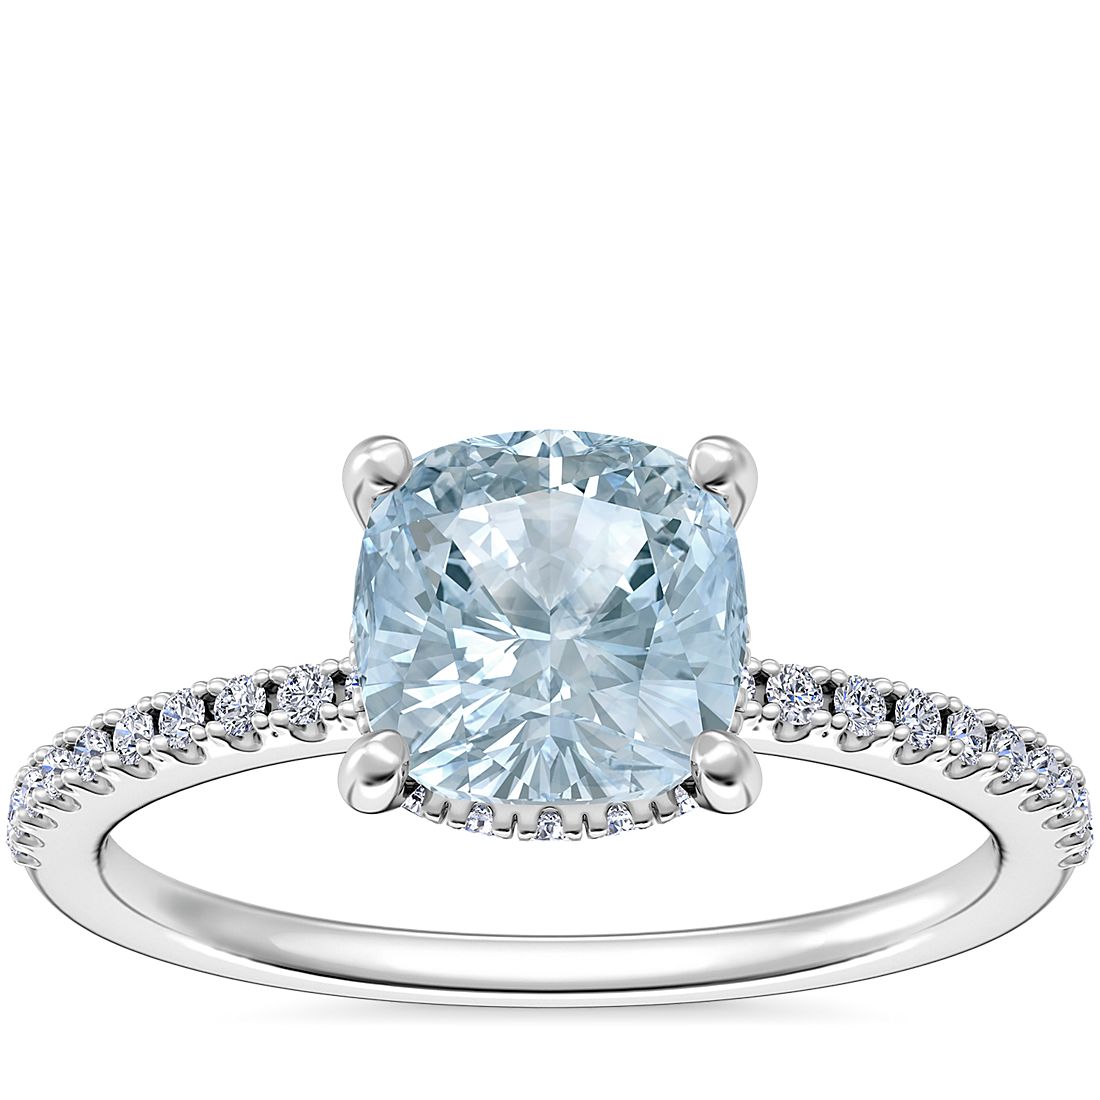 铂金镶垫形海蓝宝石小巧密钉隐藏式光环订婚戒指（6.5 毫米）